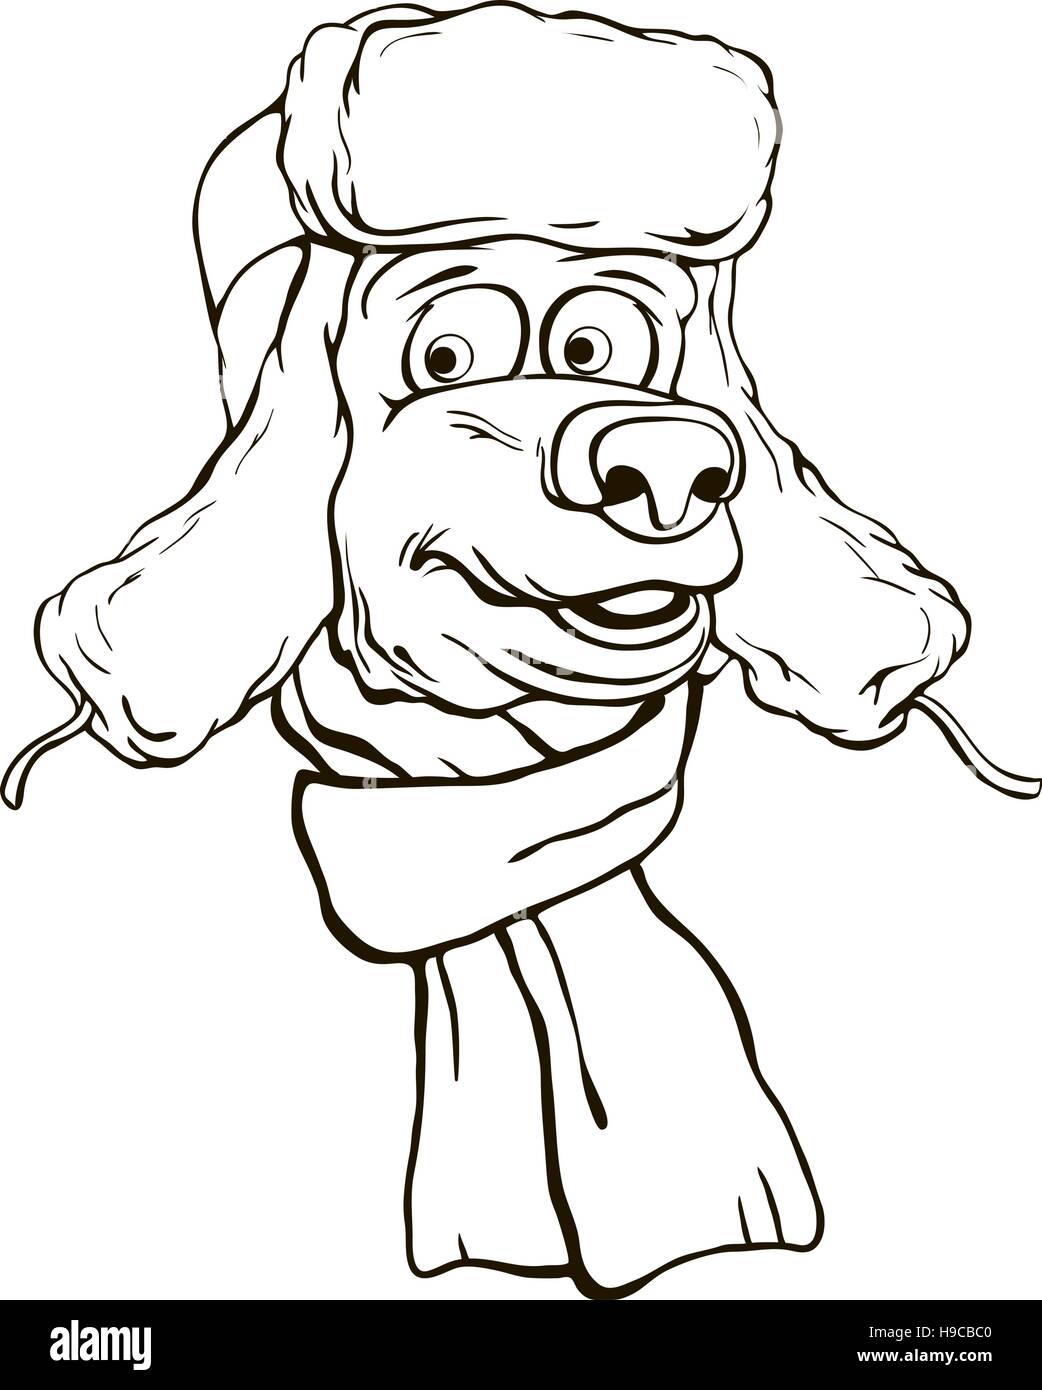 Illustration d'une tête d'ours en hiver bonnet et écharpe. Monochrome  Contour dessin vectoriel Image Vectorielle Stock - Alamy